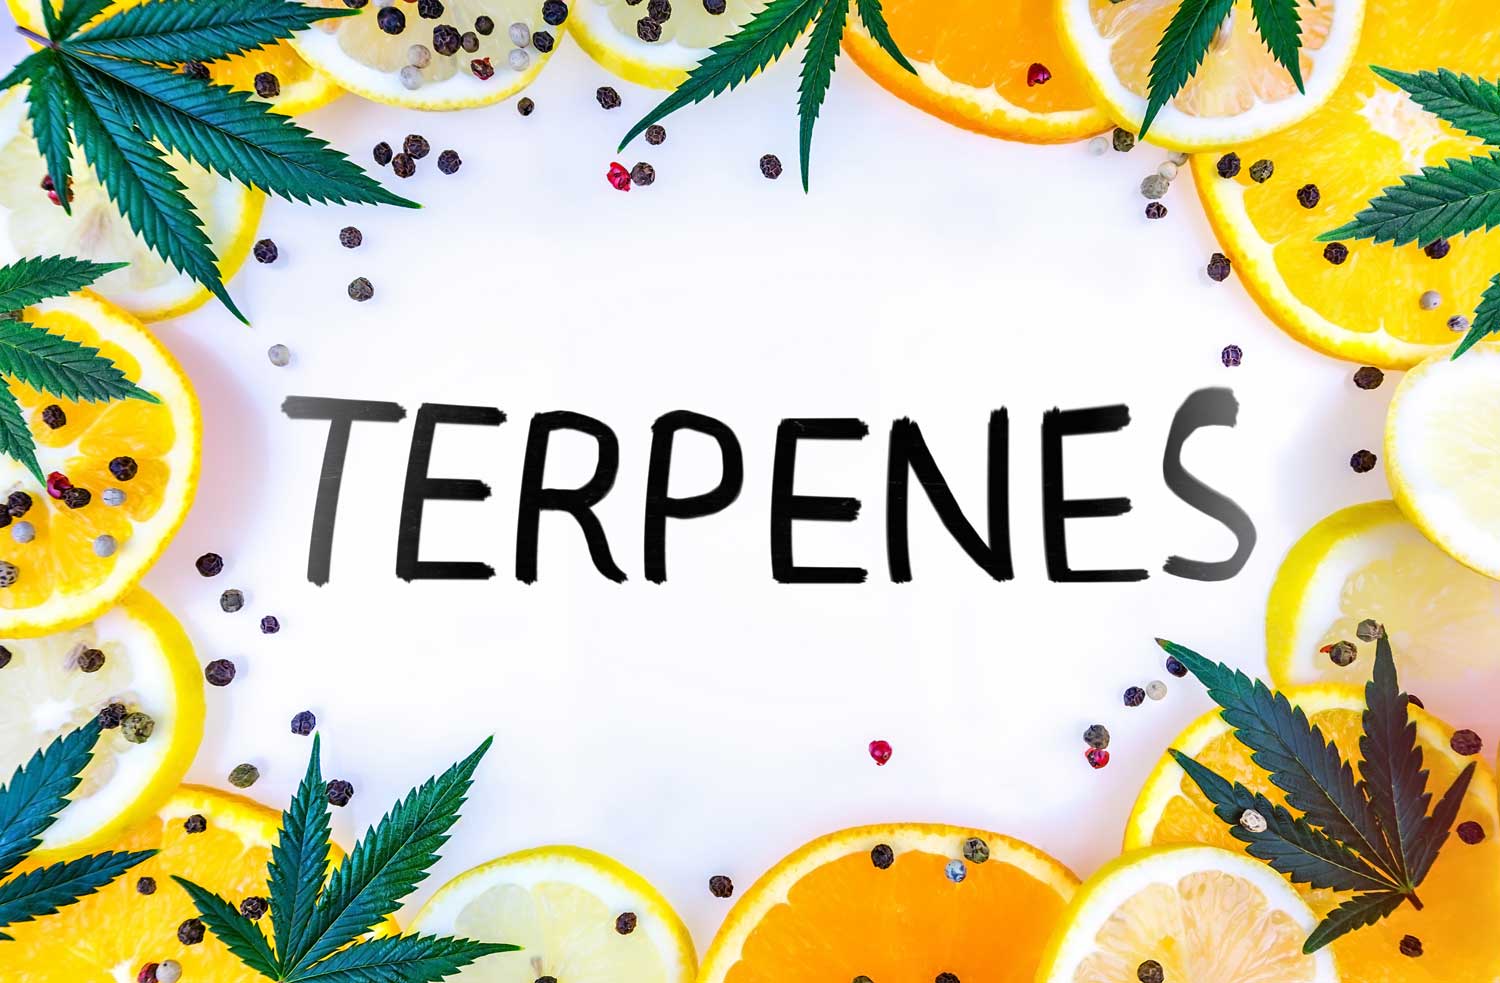 Terpenes 101